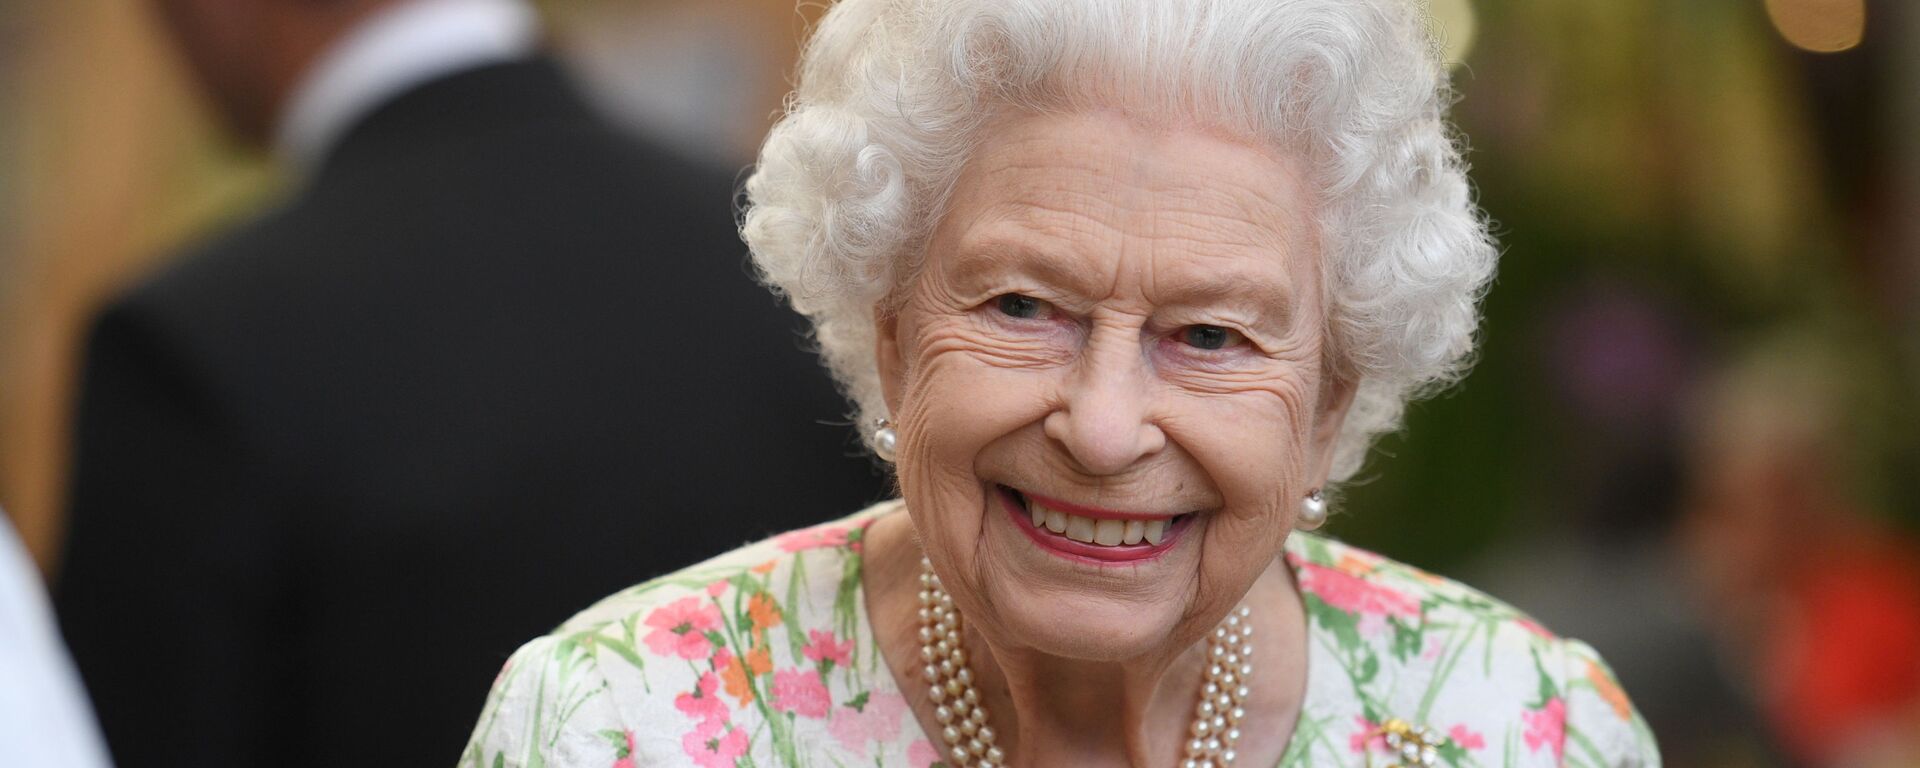 ملكة بريطانيا، إليزابيث الثانية، تحضر حفل استقبال على هامش قمة مجموعة السبع، في كورنوال، بريطانيا، 11 يونيو/ حزيران 2021 - سبوتنيك عربي, 1920, 10.07.2021